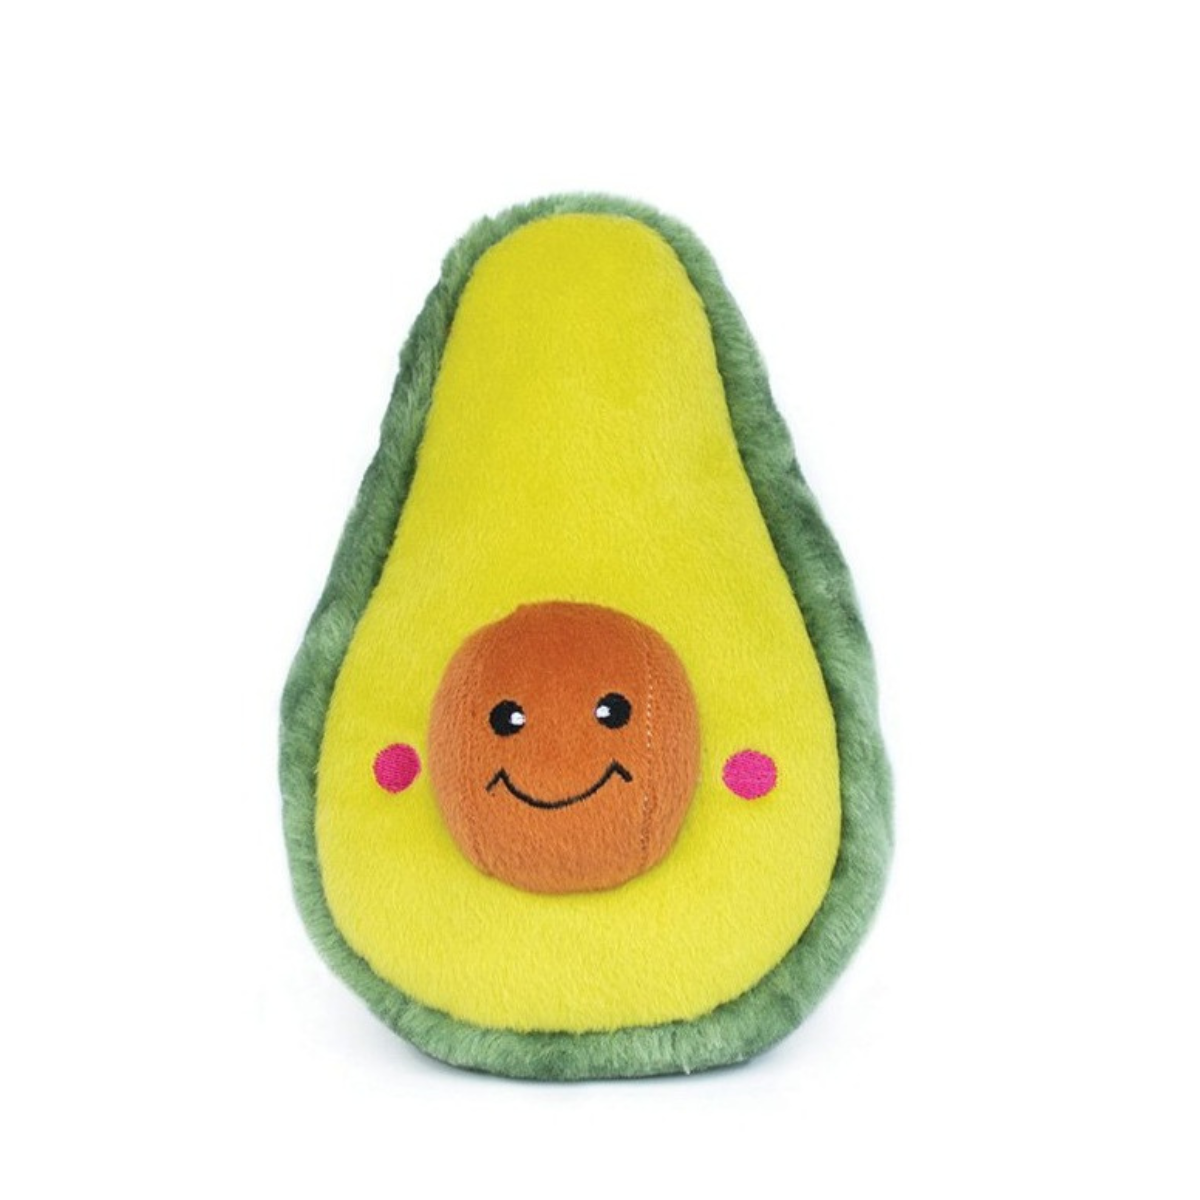 Avocado dog toy